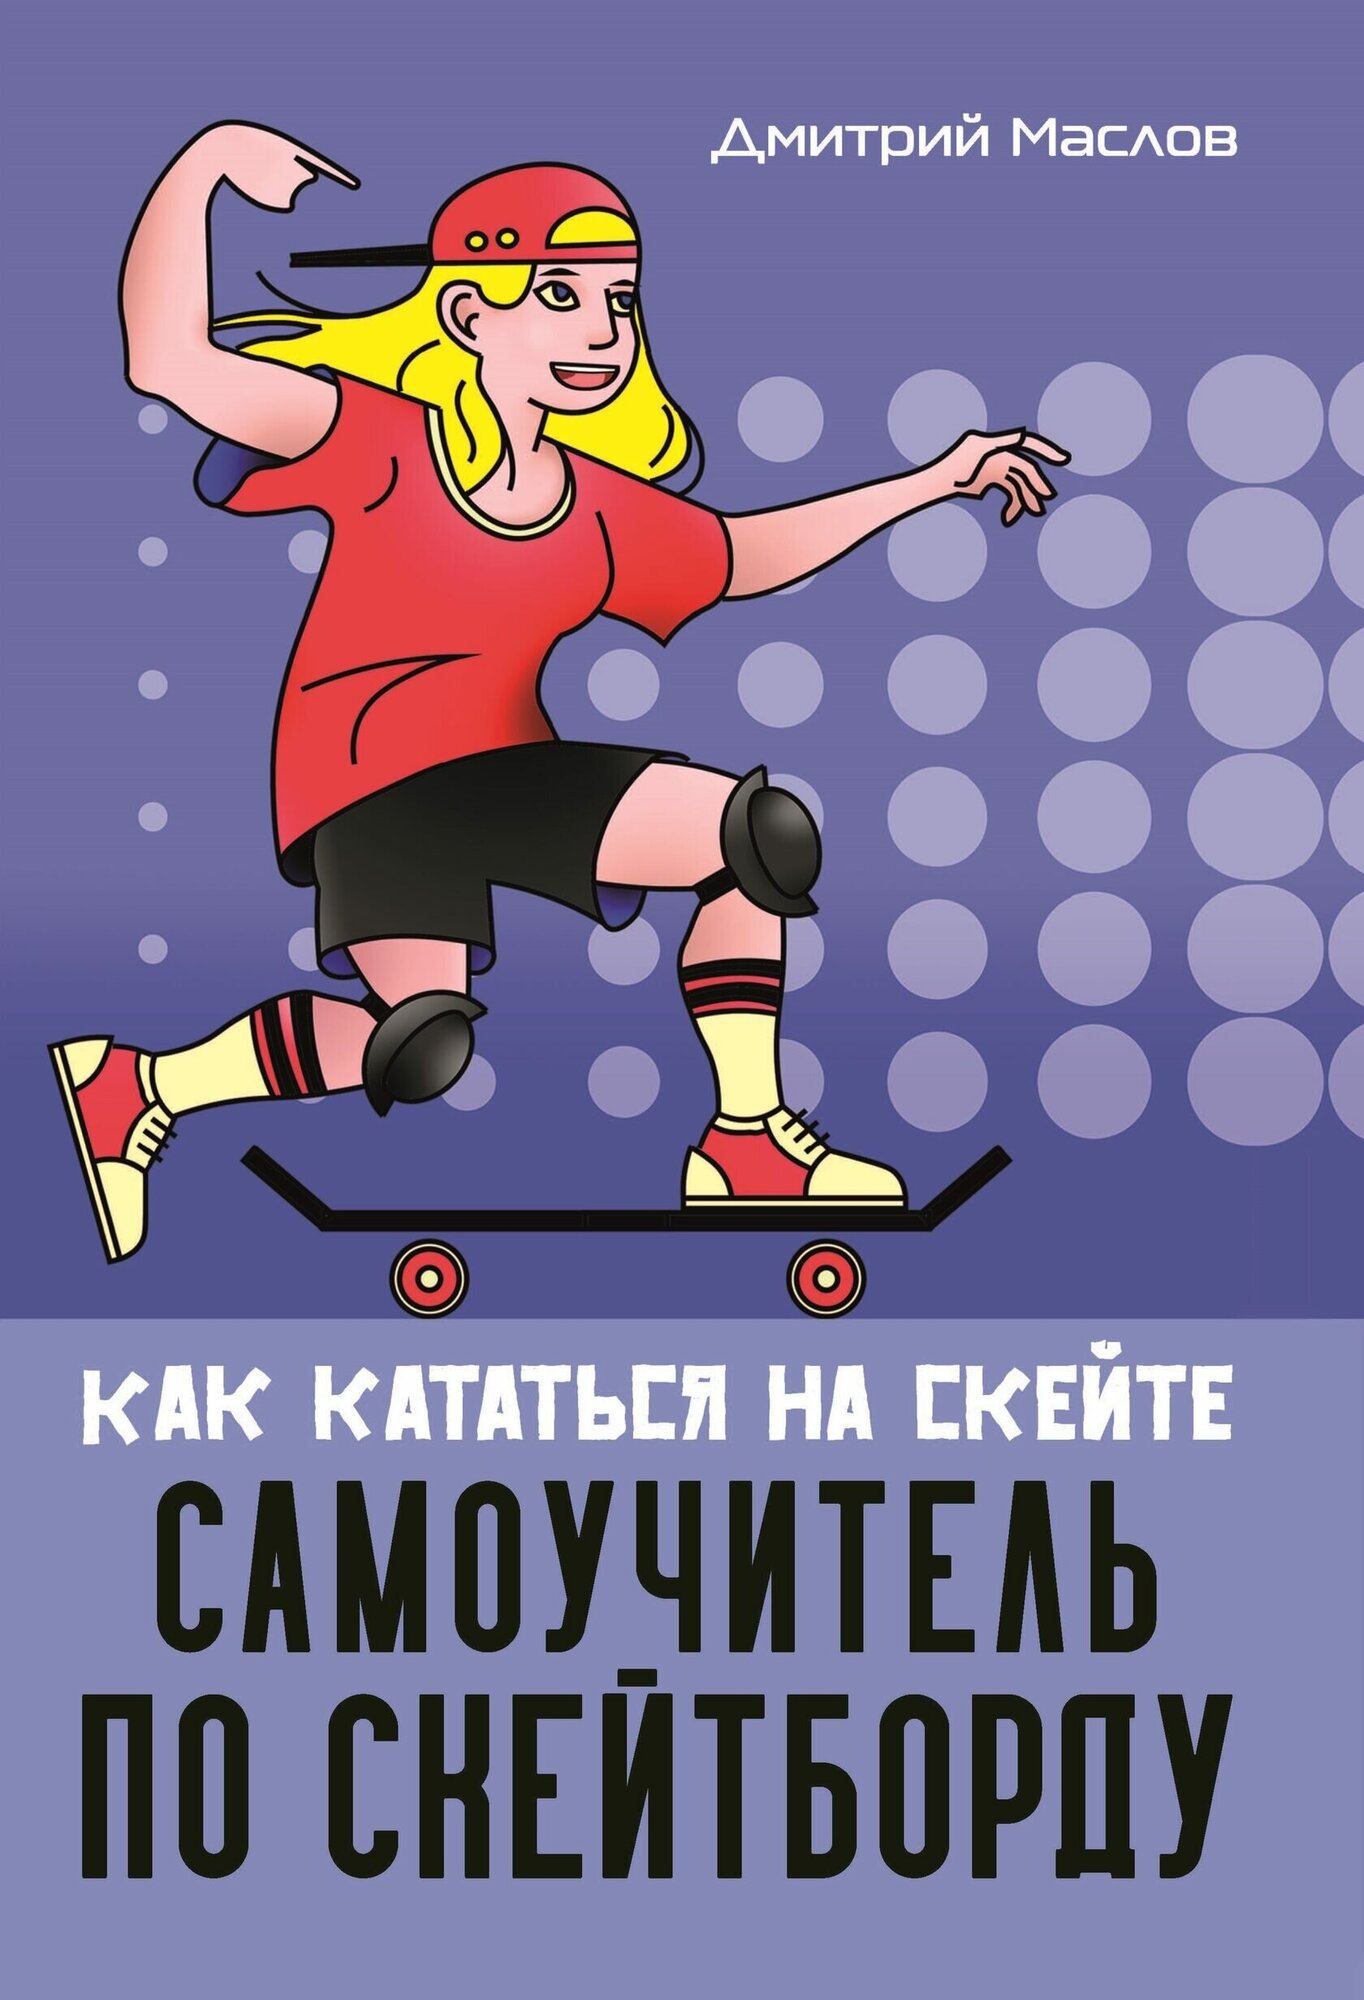 Книга "Самоучитель по скейтборду как кататься на скейте" Издательство "Спорт" Д. А. Маслов